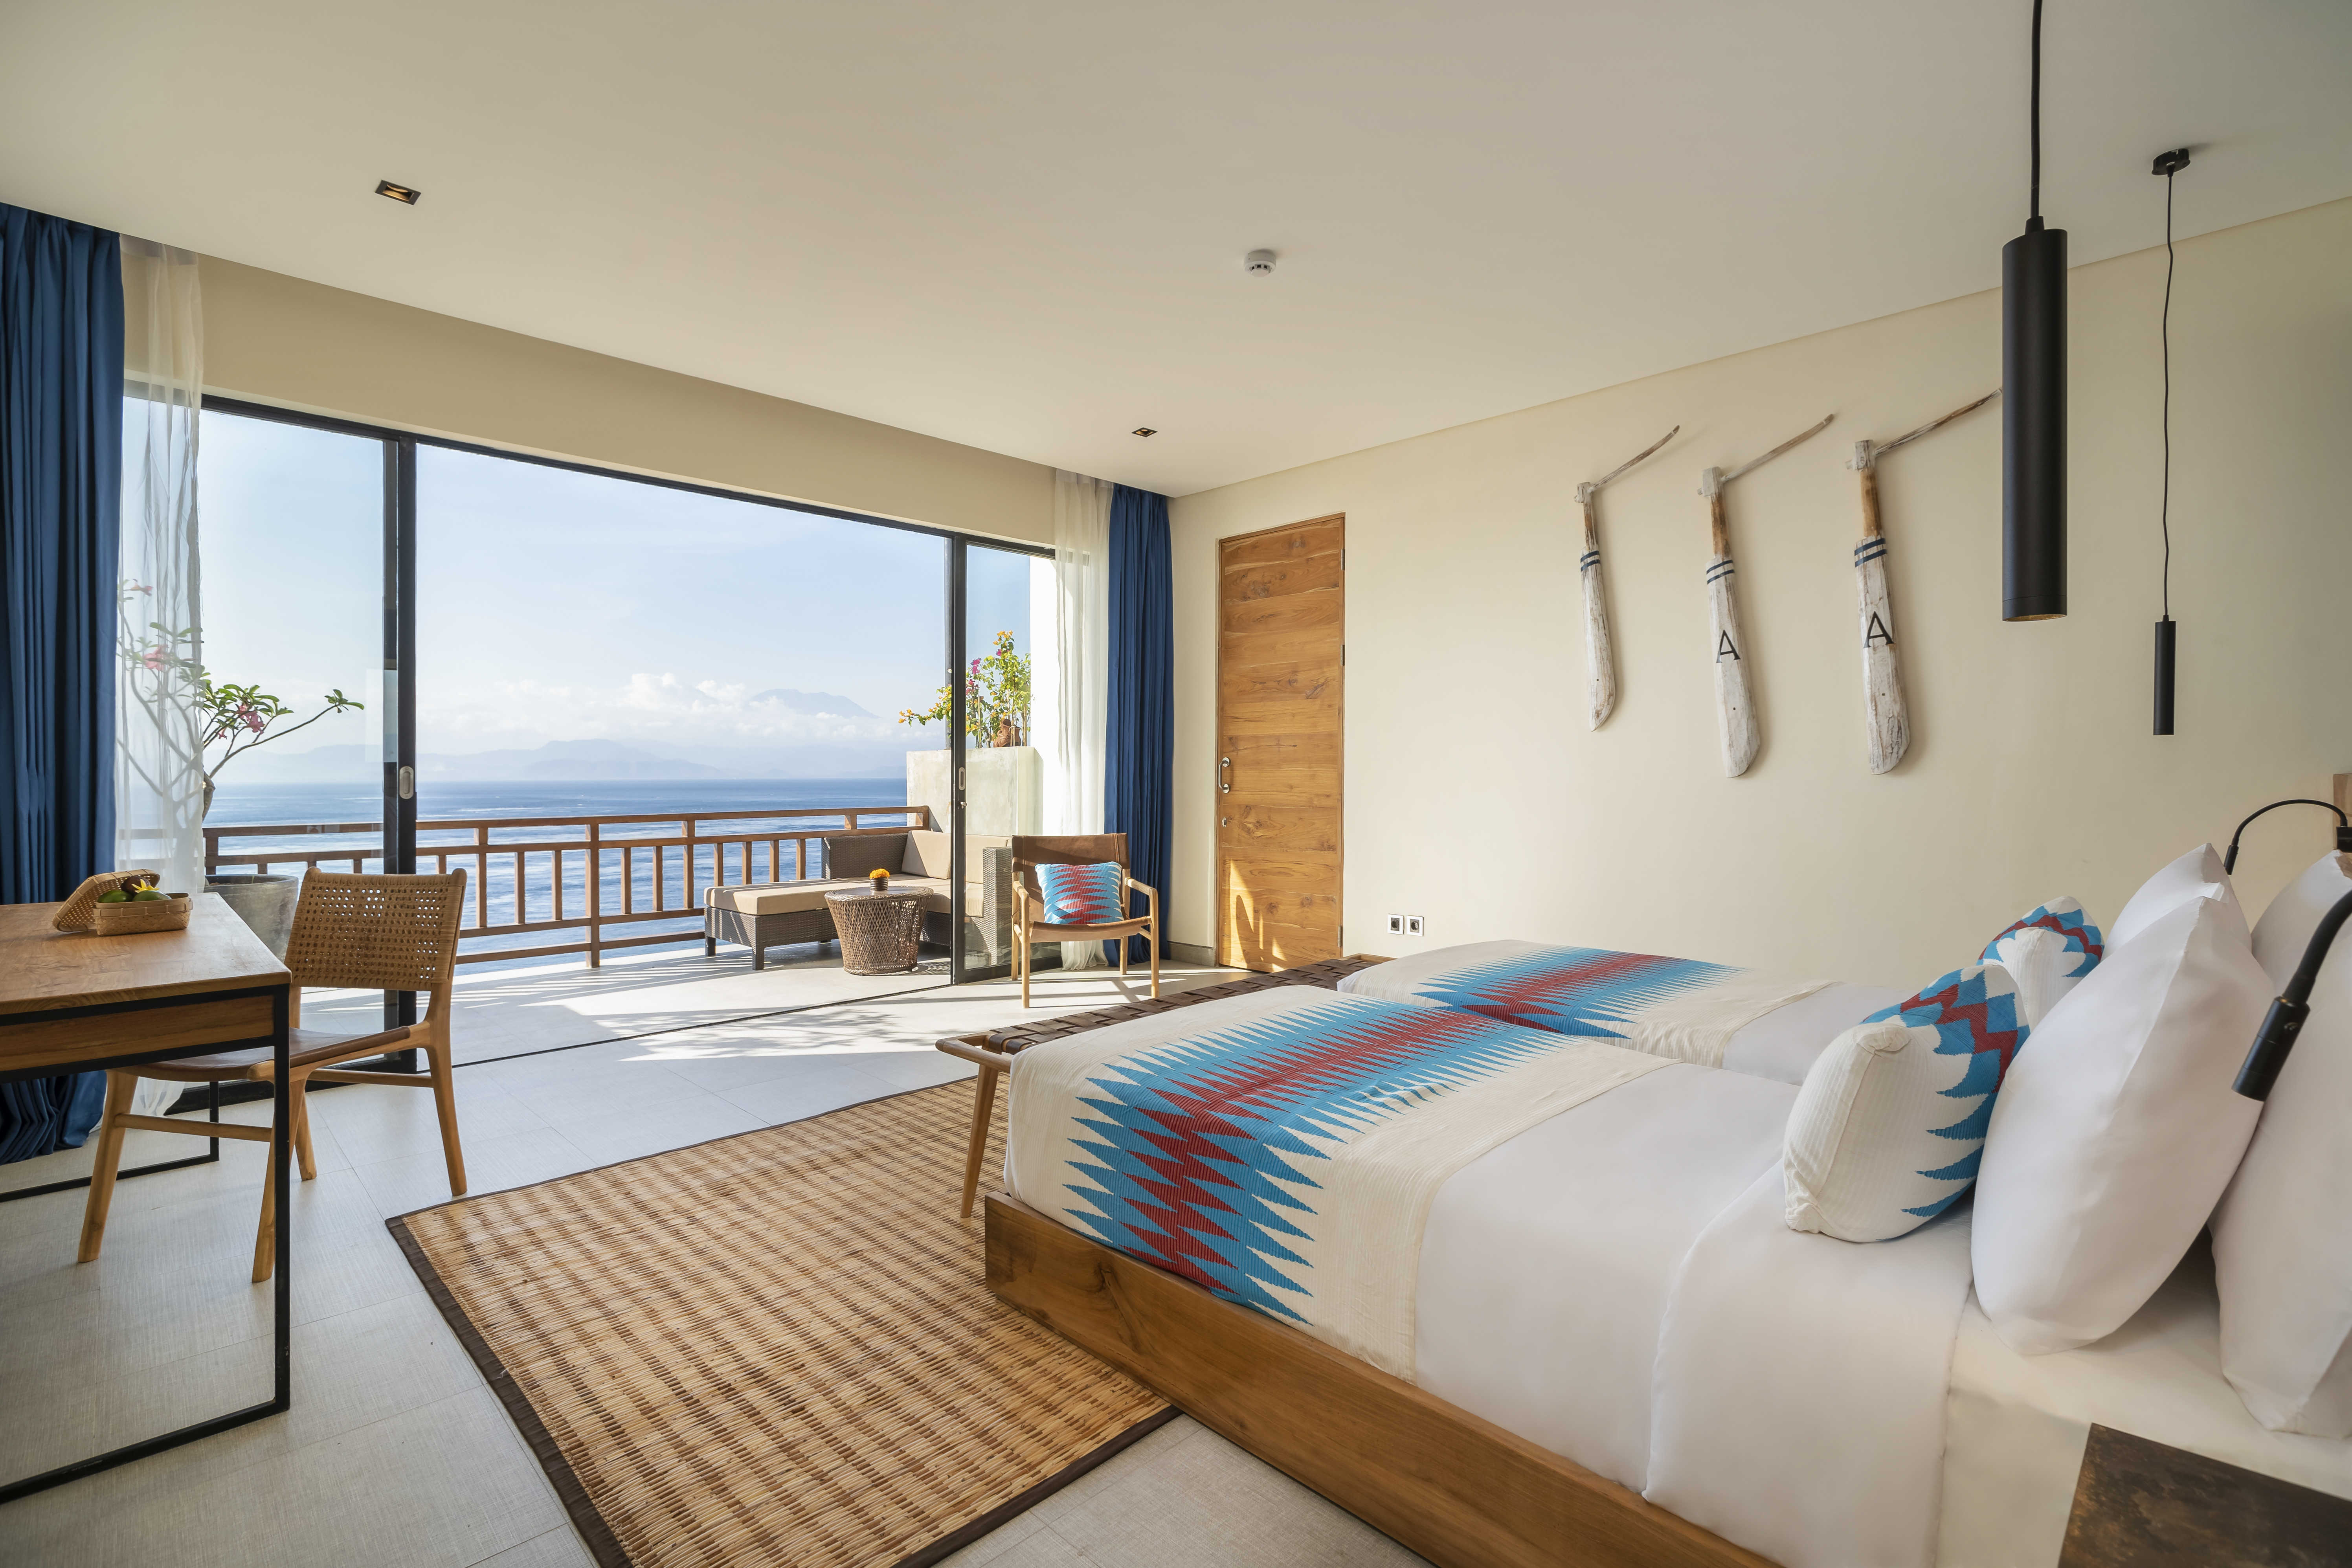 Toutes les chambres offrent une vue mer, avec Bali en arrière plan